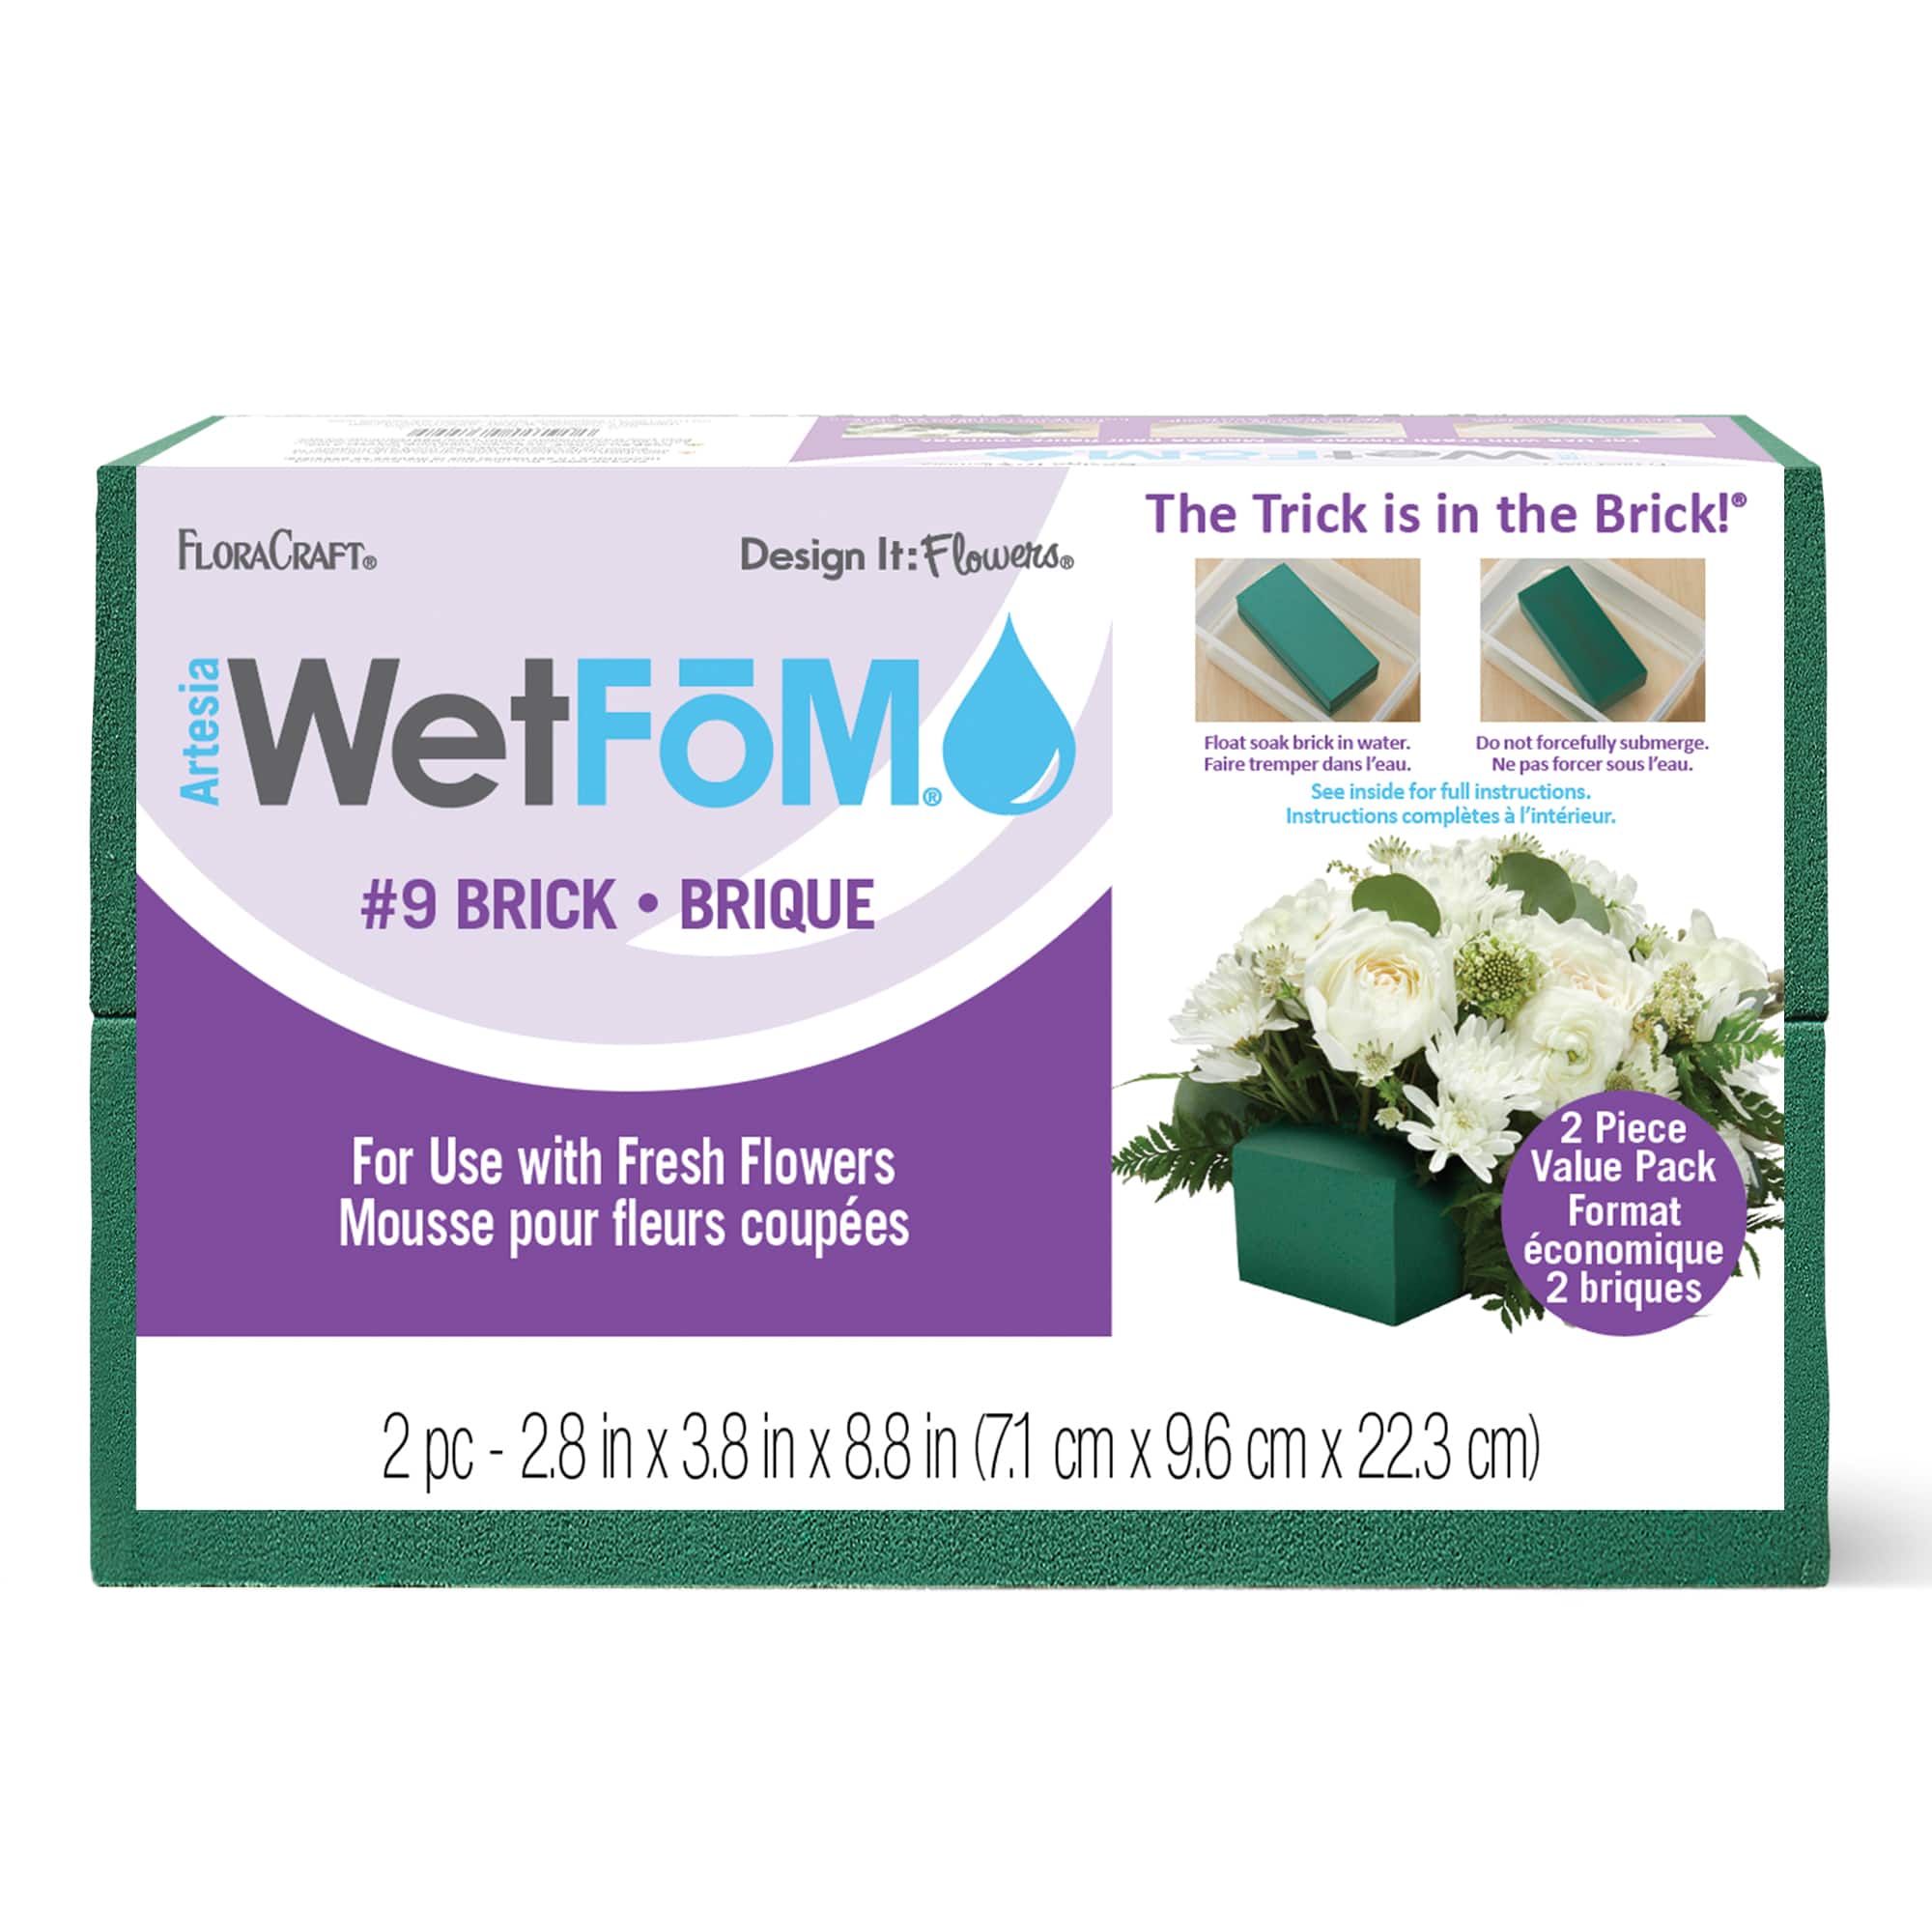 Floracraft WetFoM Green Floral Design Cage - Each